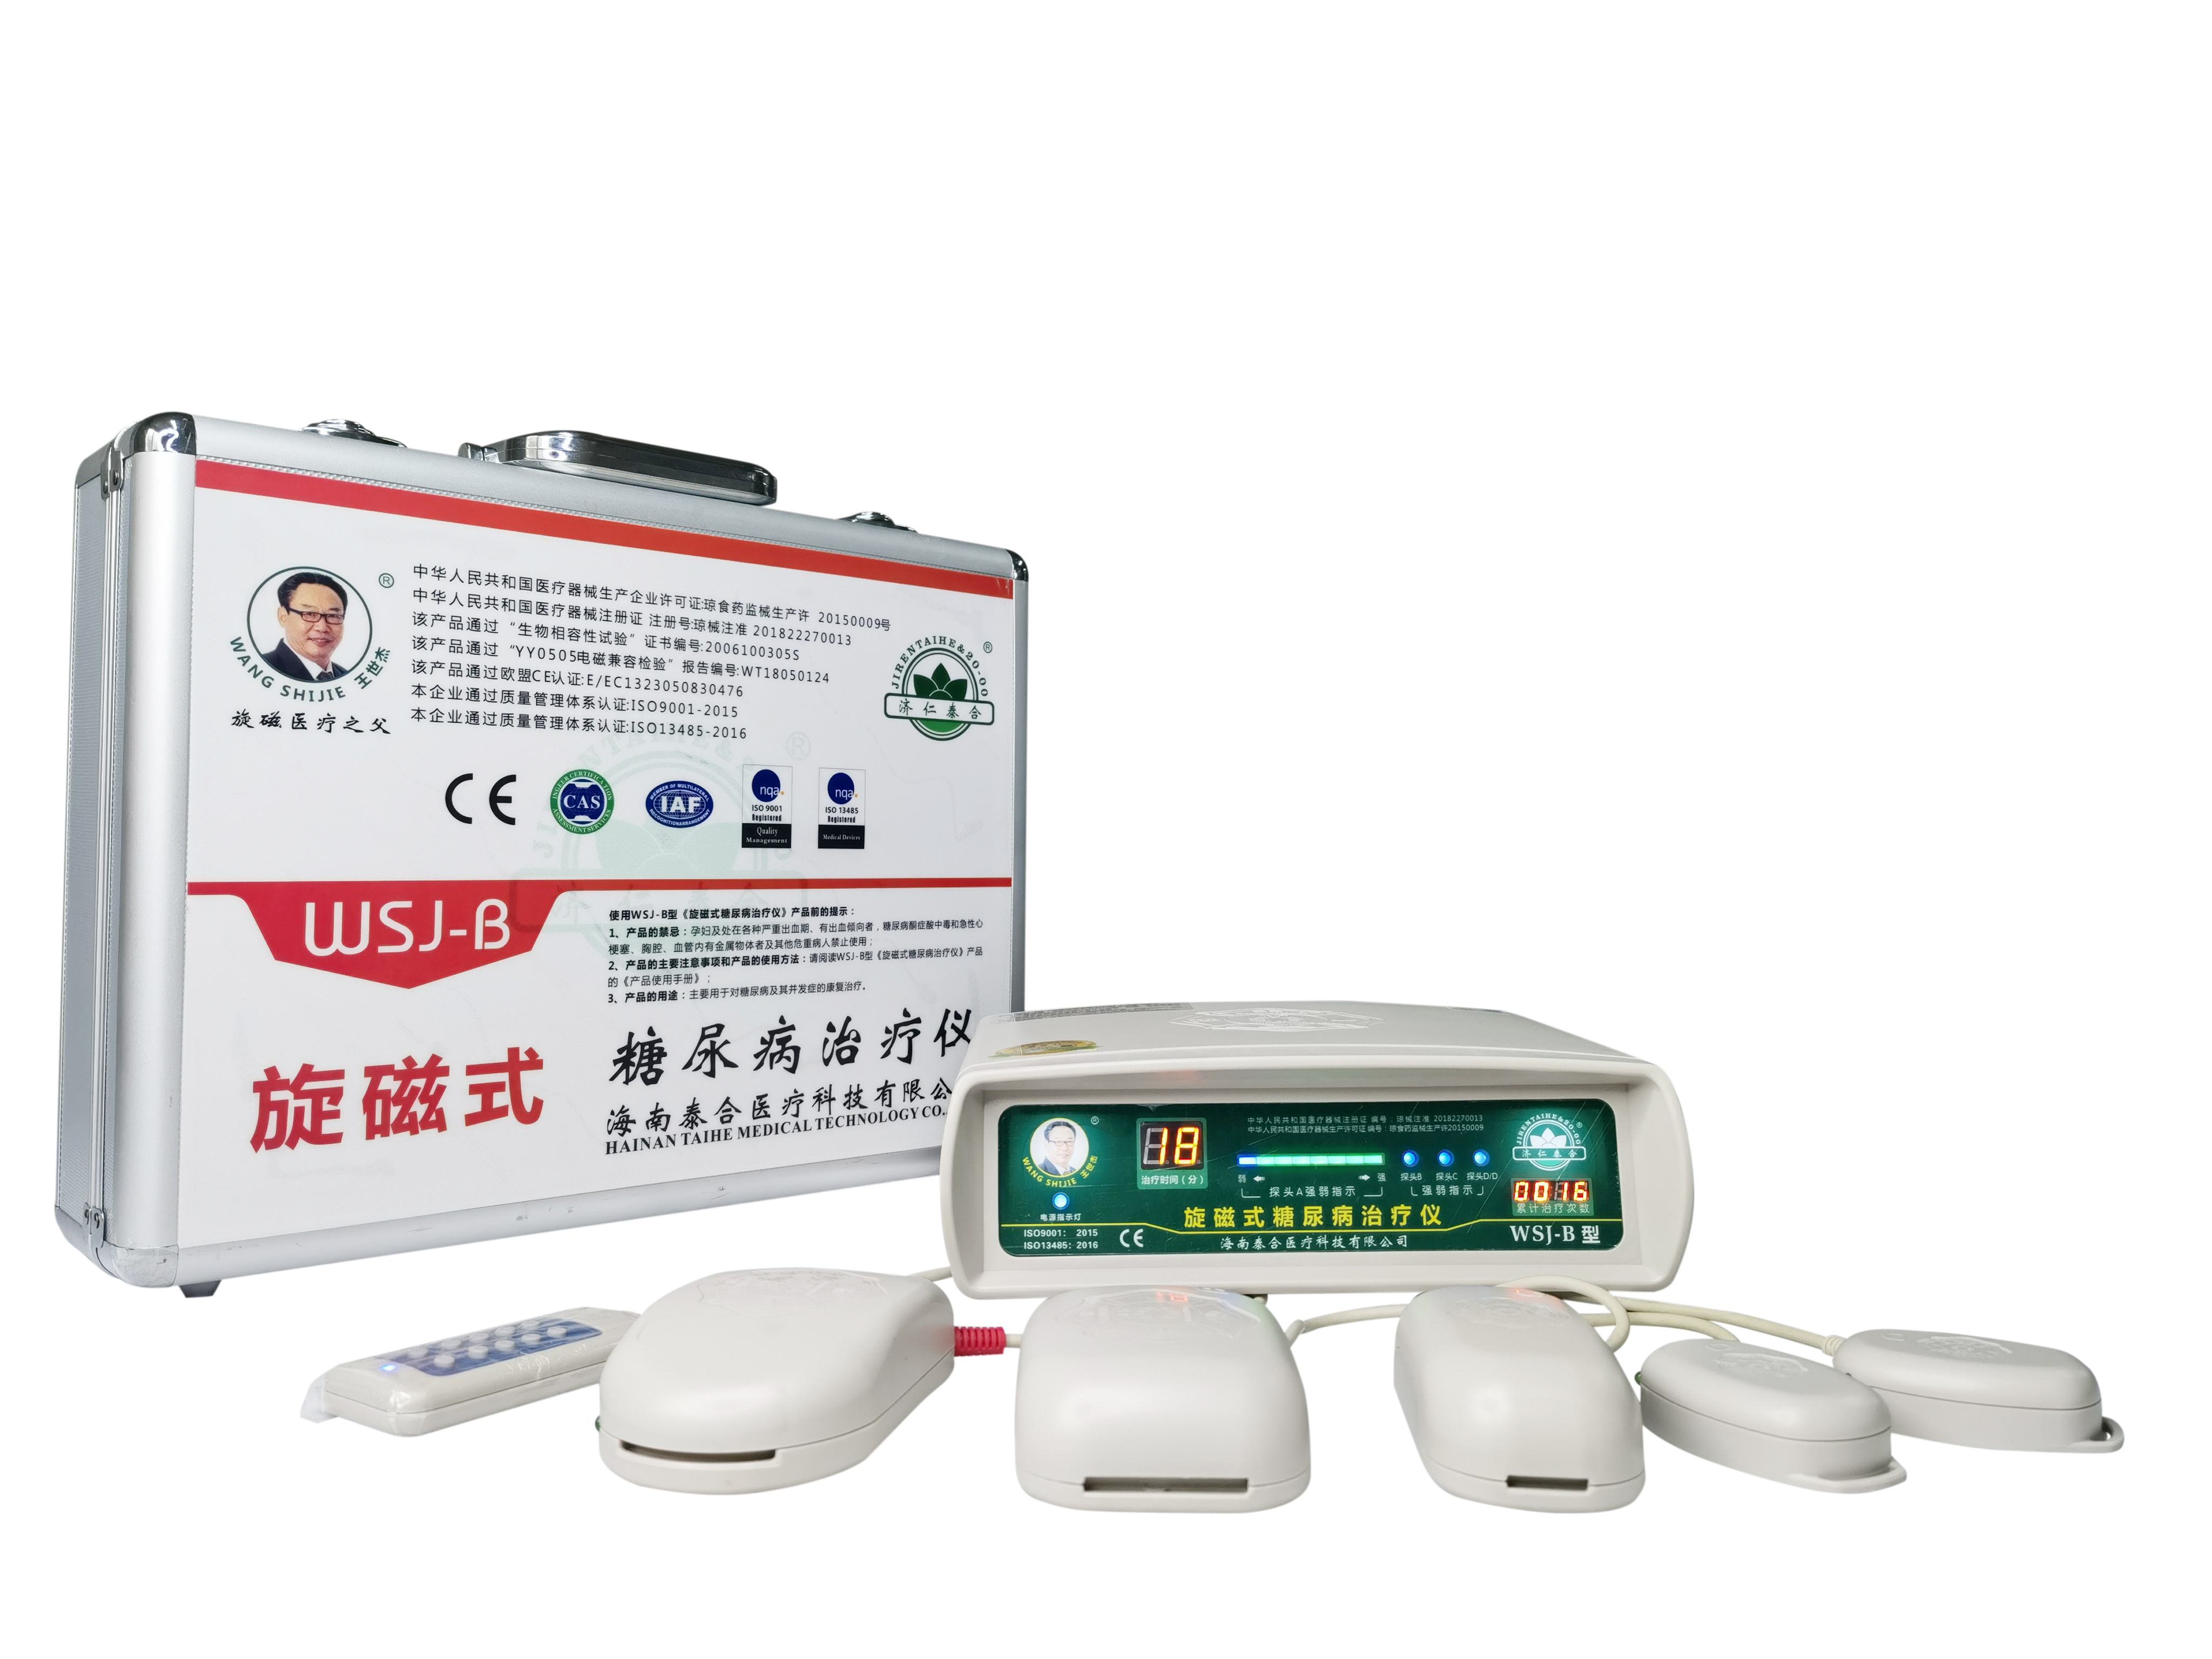 郑州 WSJ-B型旋磁式糖尿病治疗仪